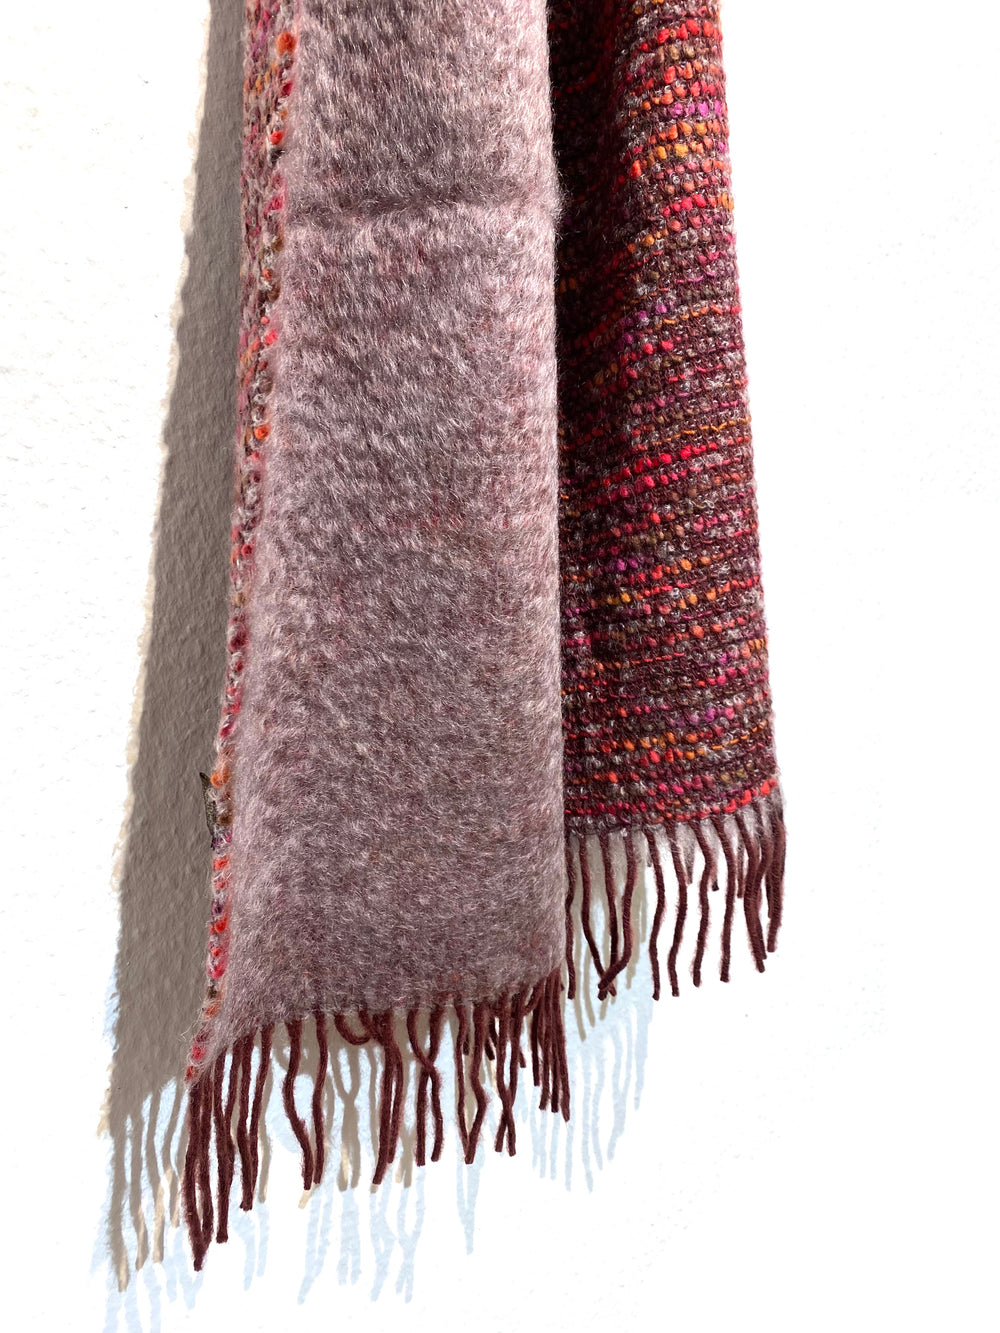 Mantas Ezcaray Wollschal Schal aus Mohair und Wolle - grau, rot, pink, gelb